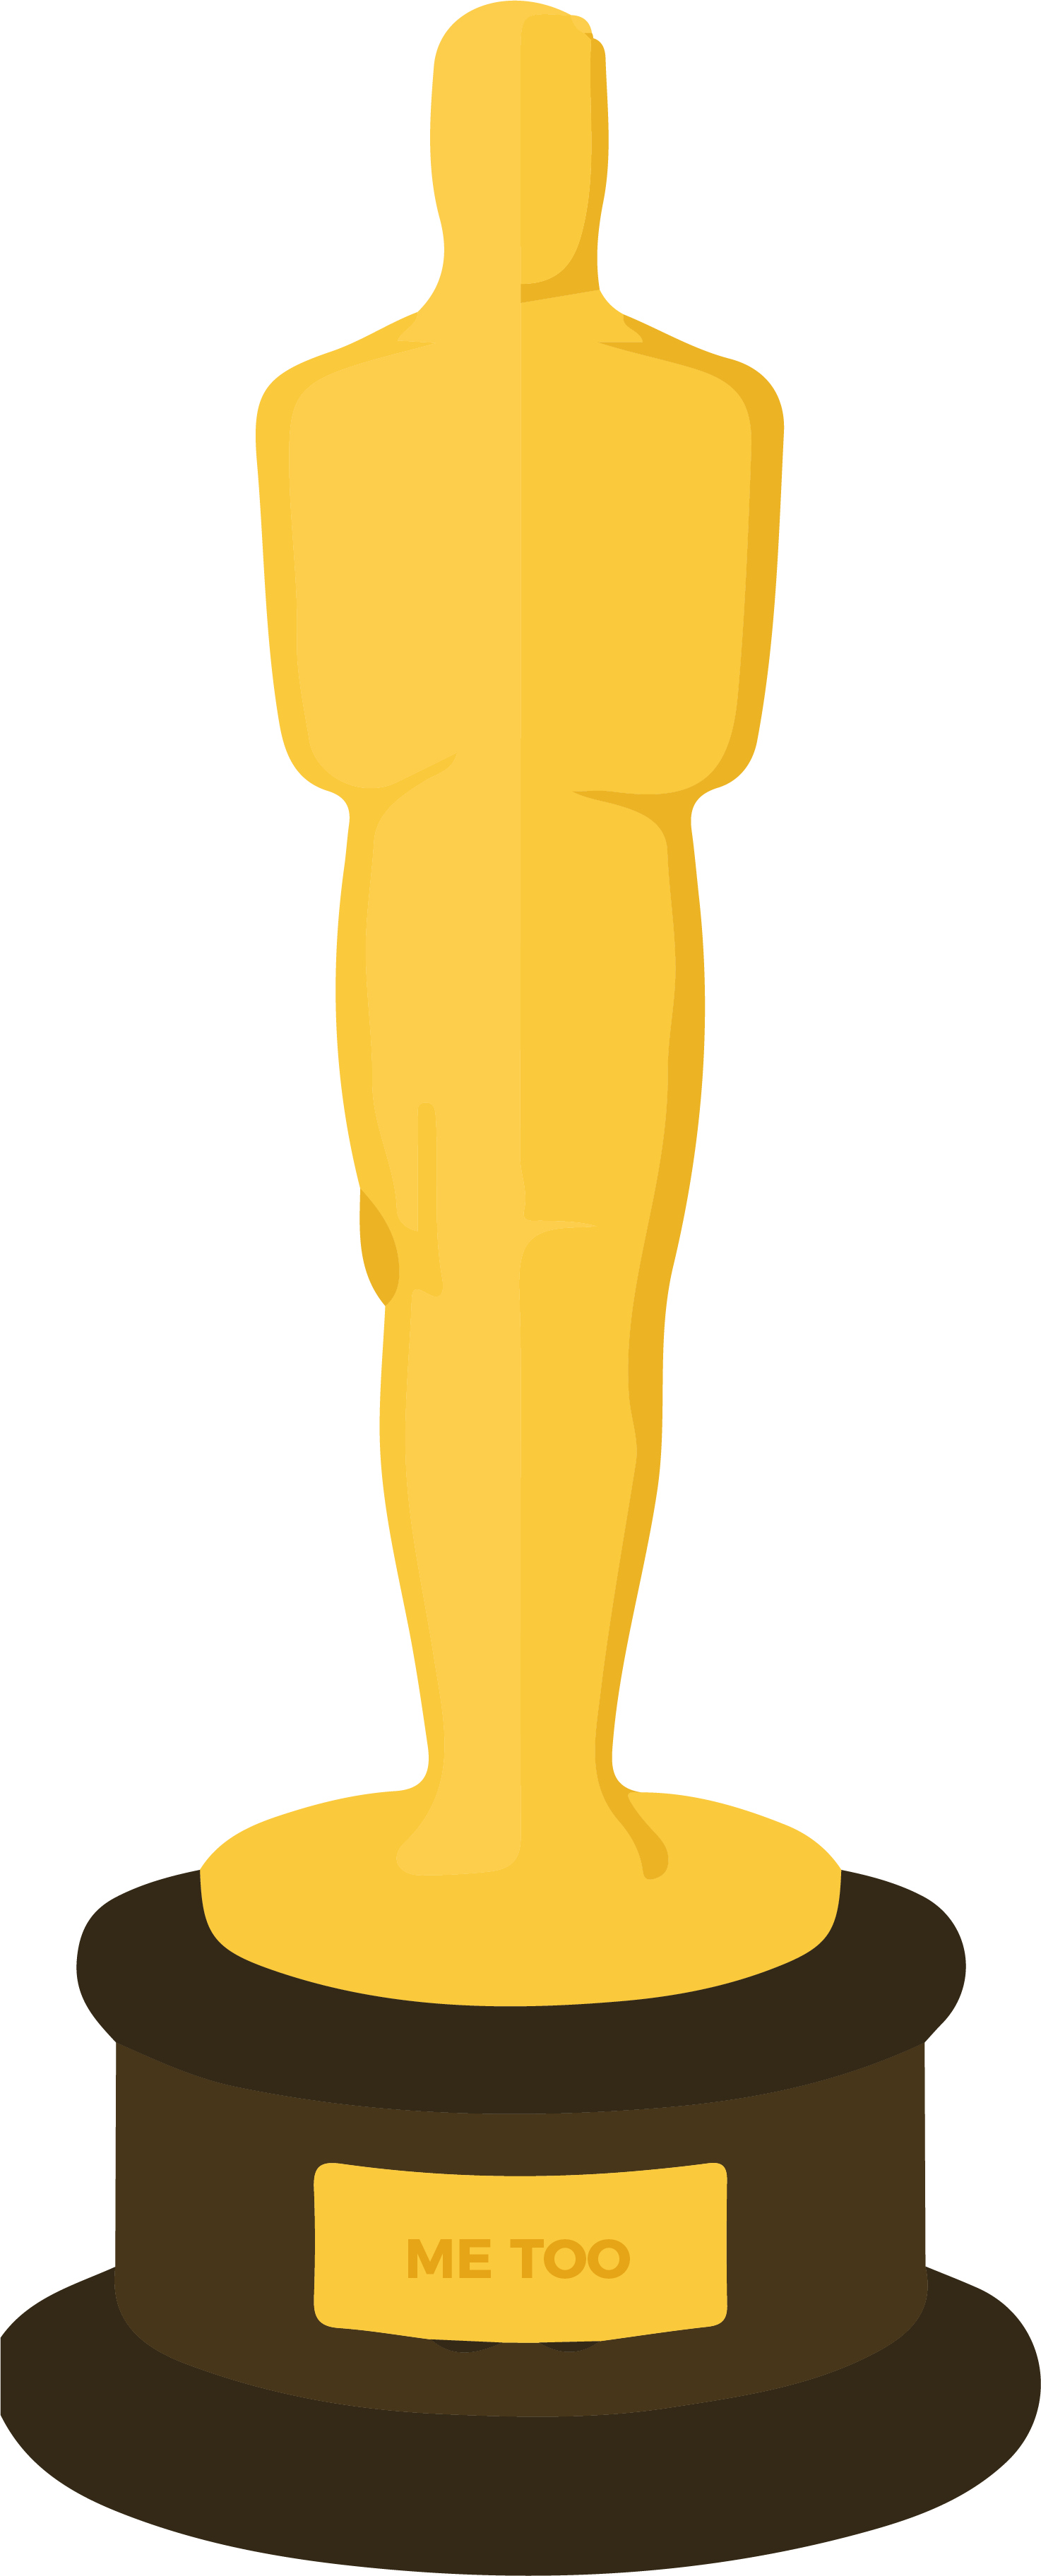 Oscar Me Too - Academy Award Clip Art (1474x3648)